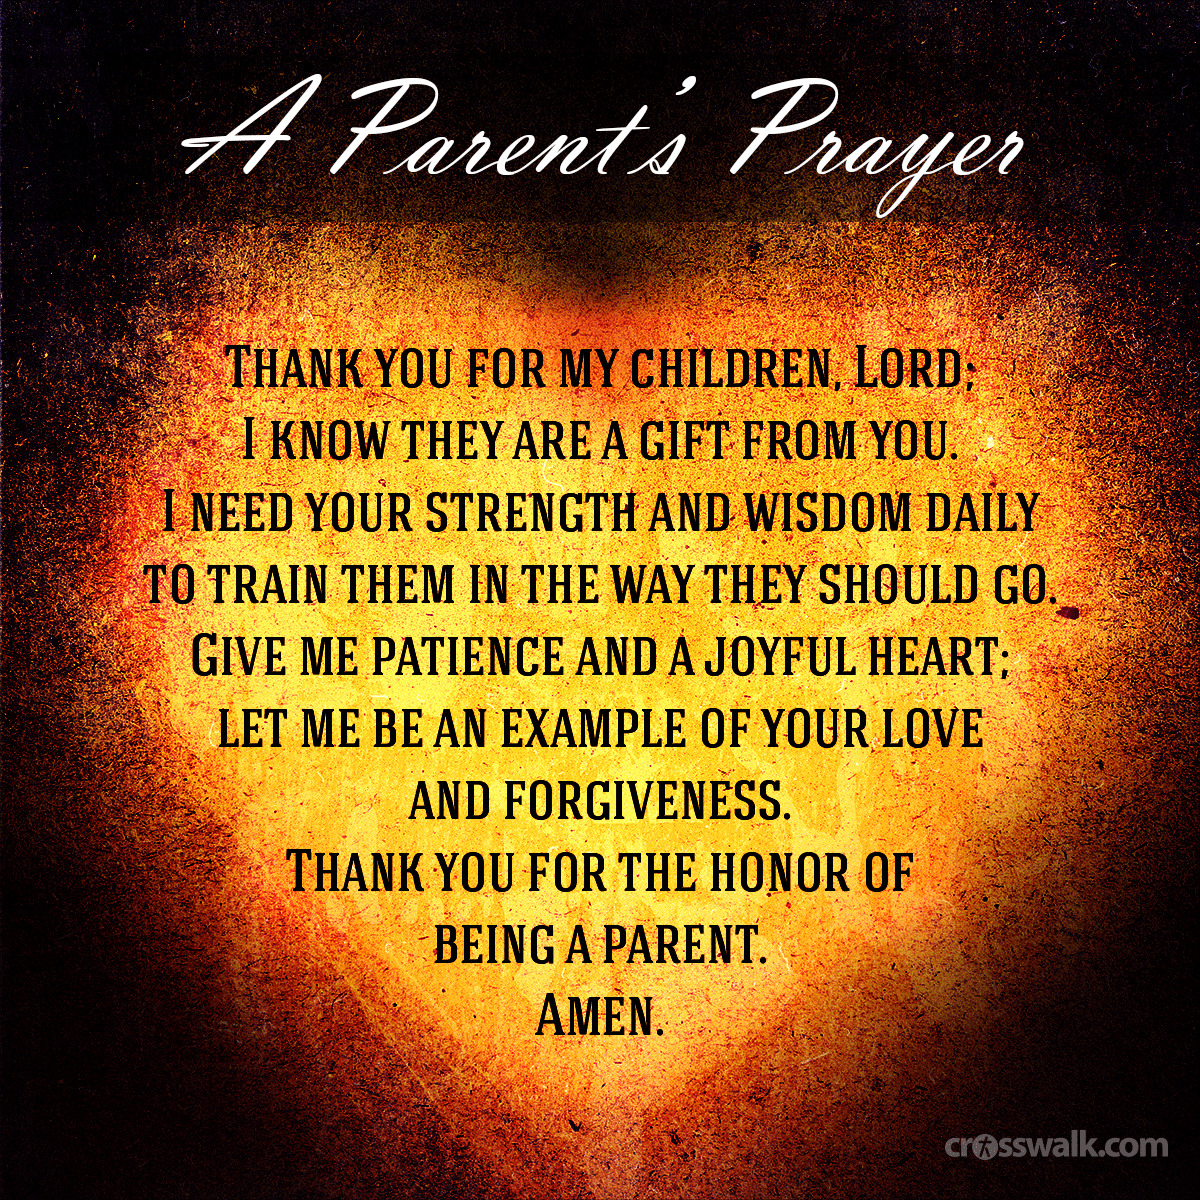 Doa mohon ampun kepada orang tua